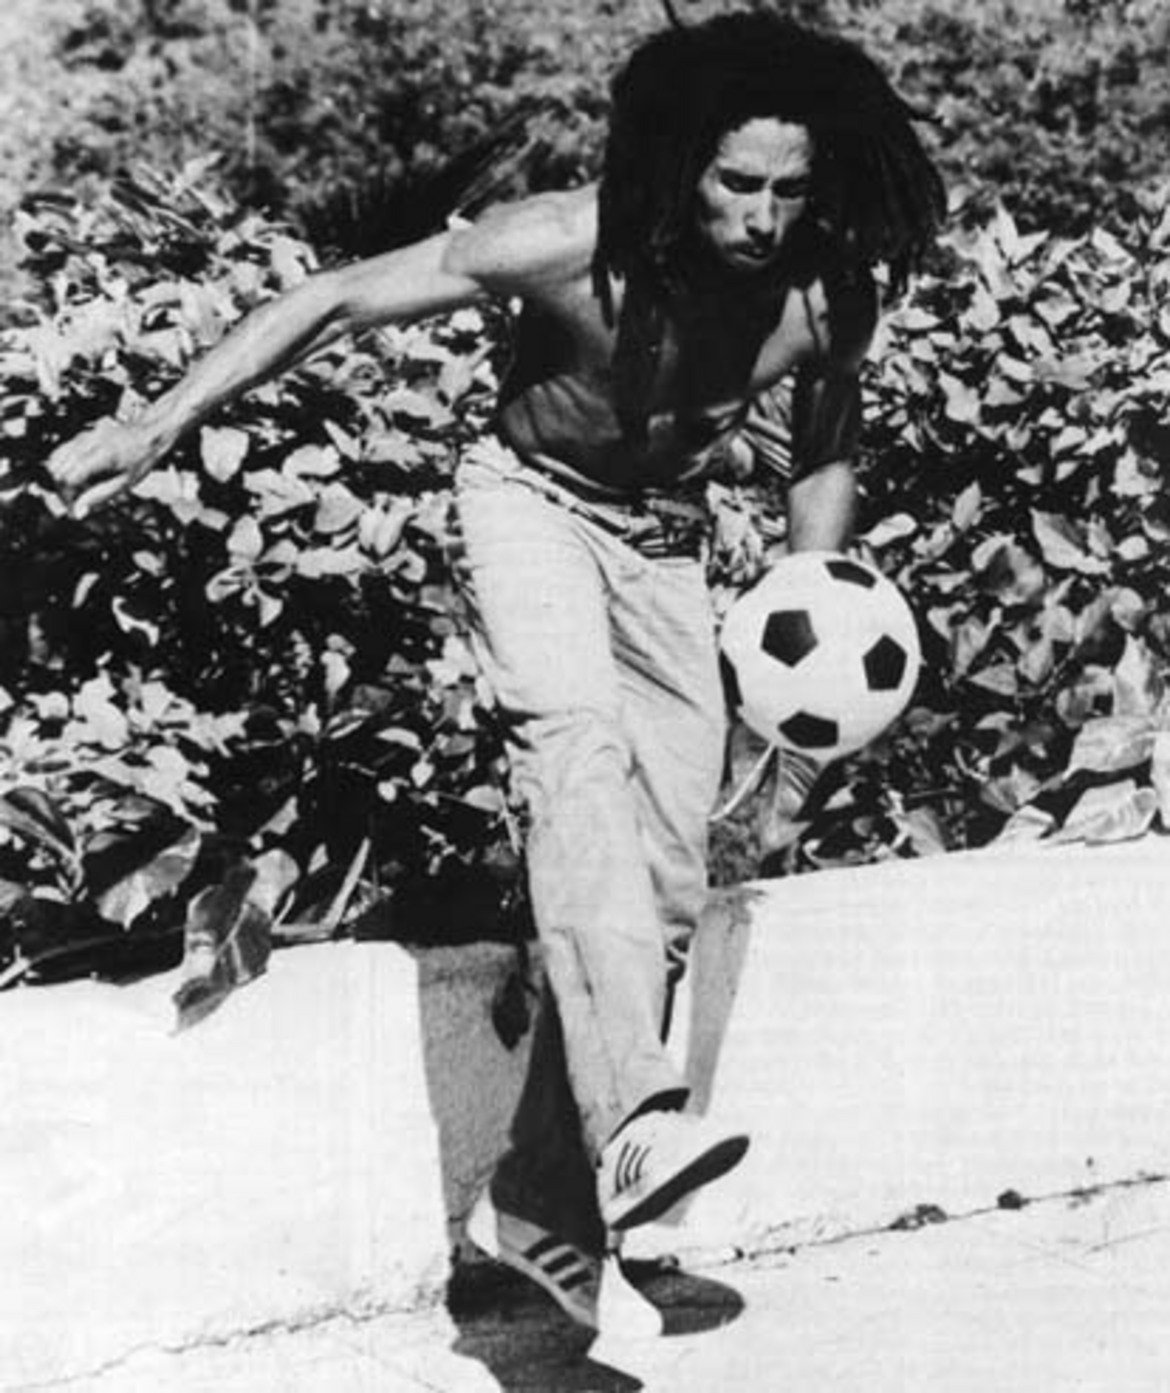 "Светът е футбол. Цялата вселена е футбол. Обичам футбола, защото той е свобода", казва Марли през 1979 г.